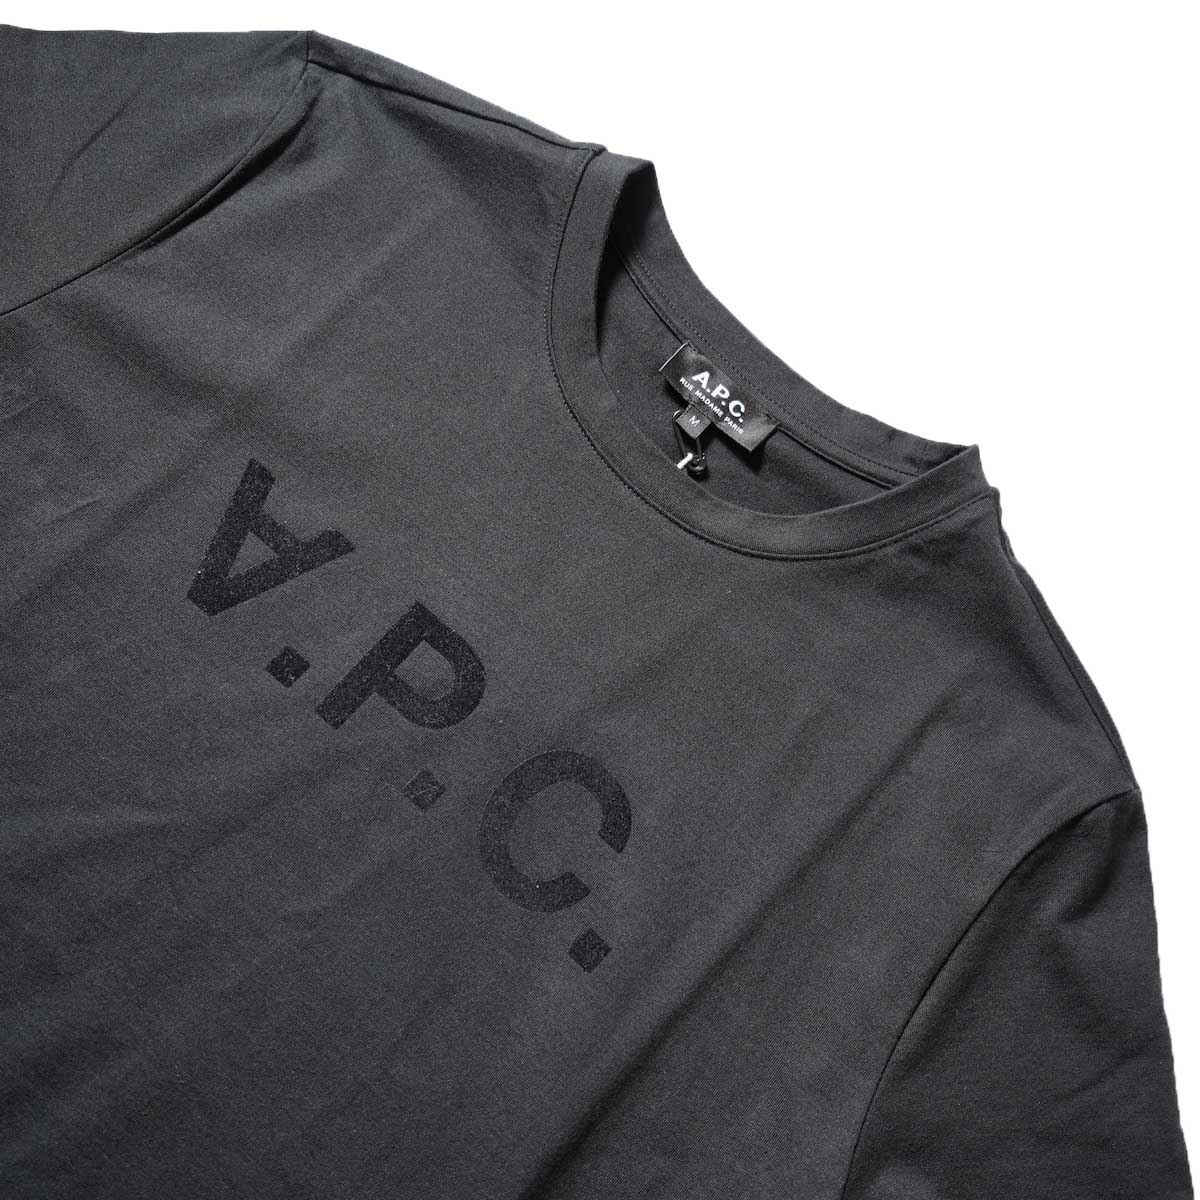 A.P.C. / VPC カラーTシャツ (Black)ネック